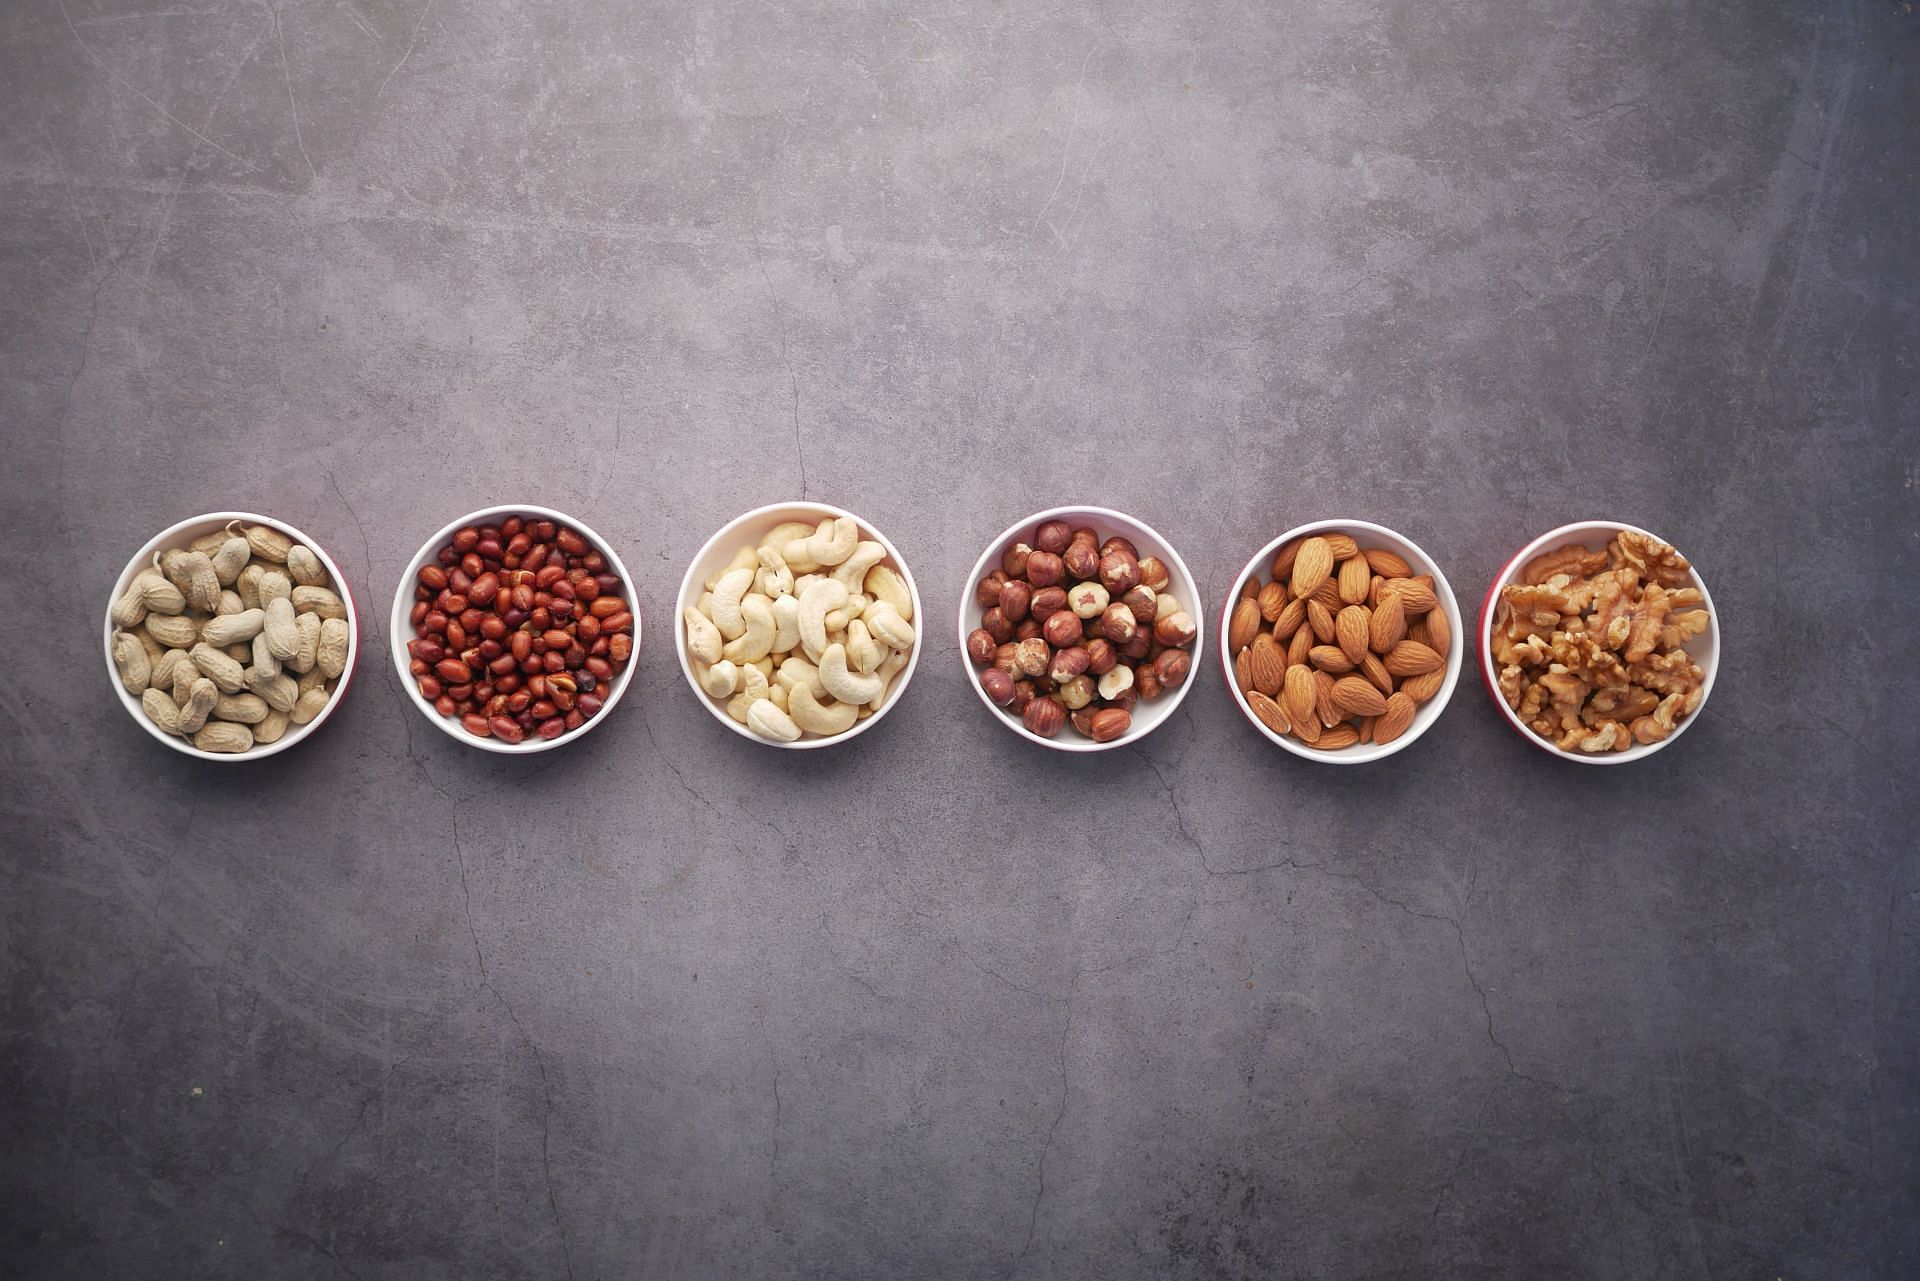 Magnesium is obtained from nuts and seeds. (Image via Unsplash/ Towfiqu Barbhuiya)